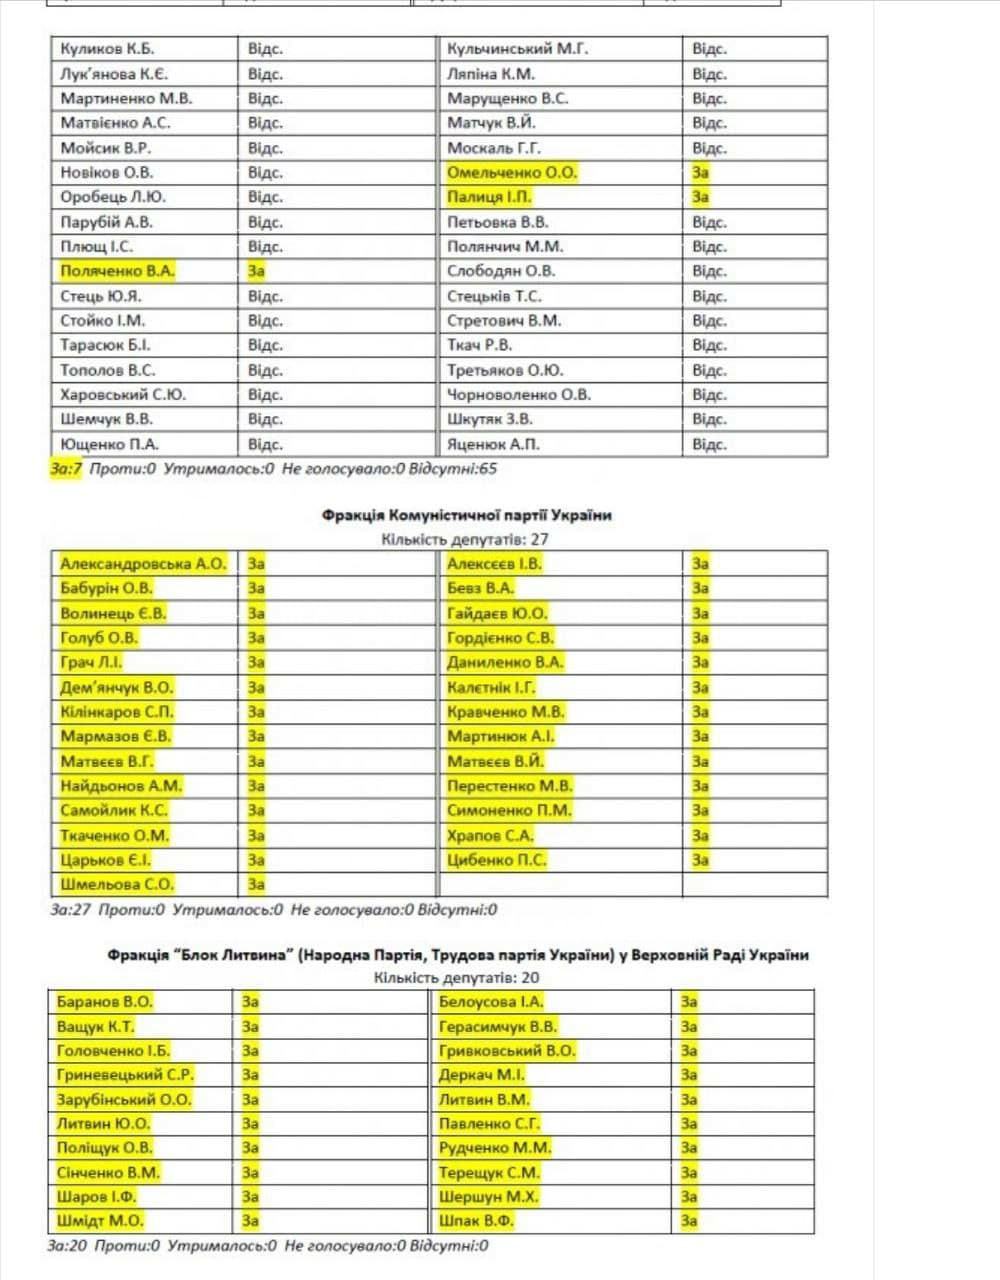 Опубликован список нардепов, которых СБУ проверит из-за Харьковских соглашений - 6 - изображение